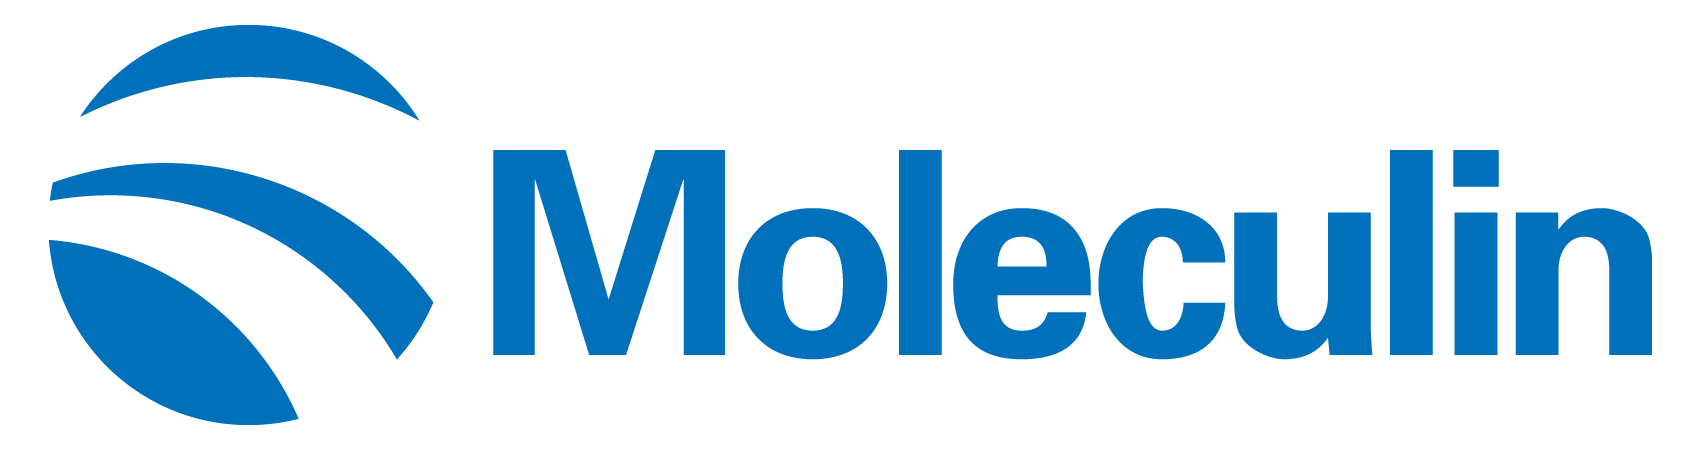 moleculin-logo_horiza45.jpg